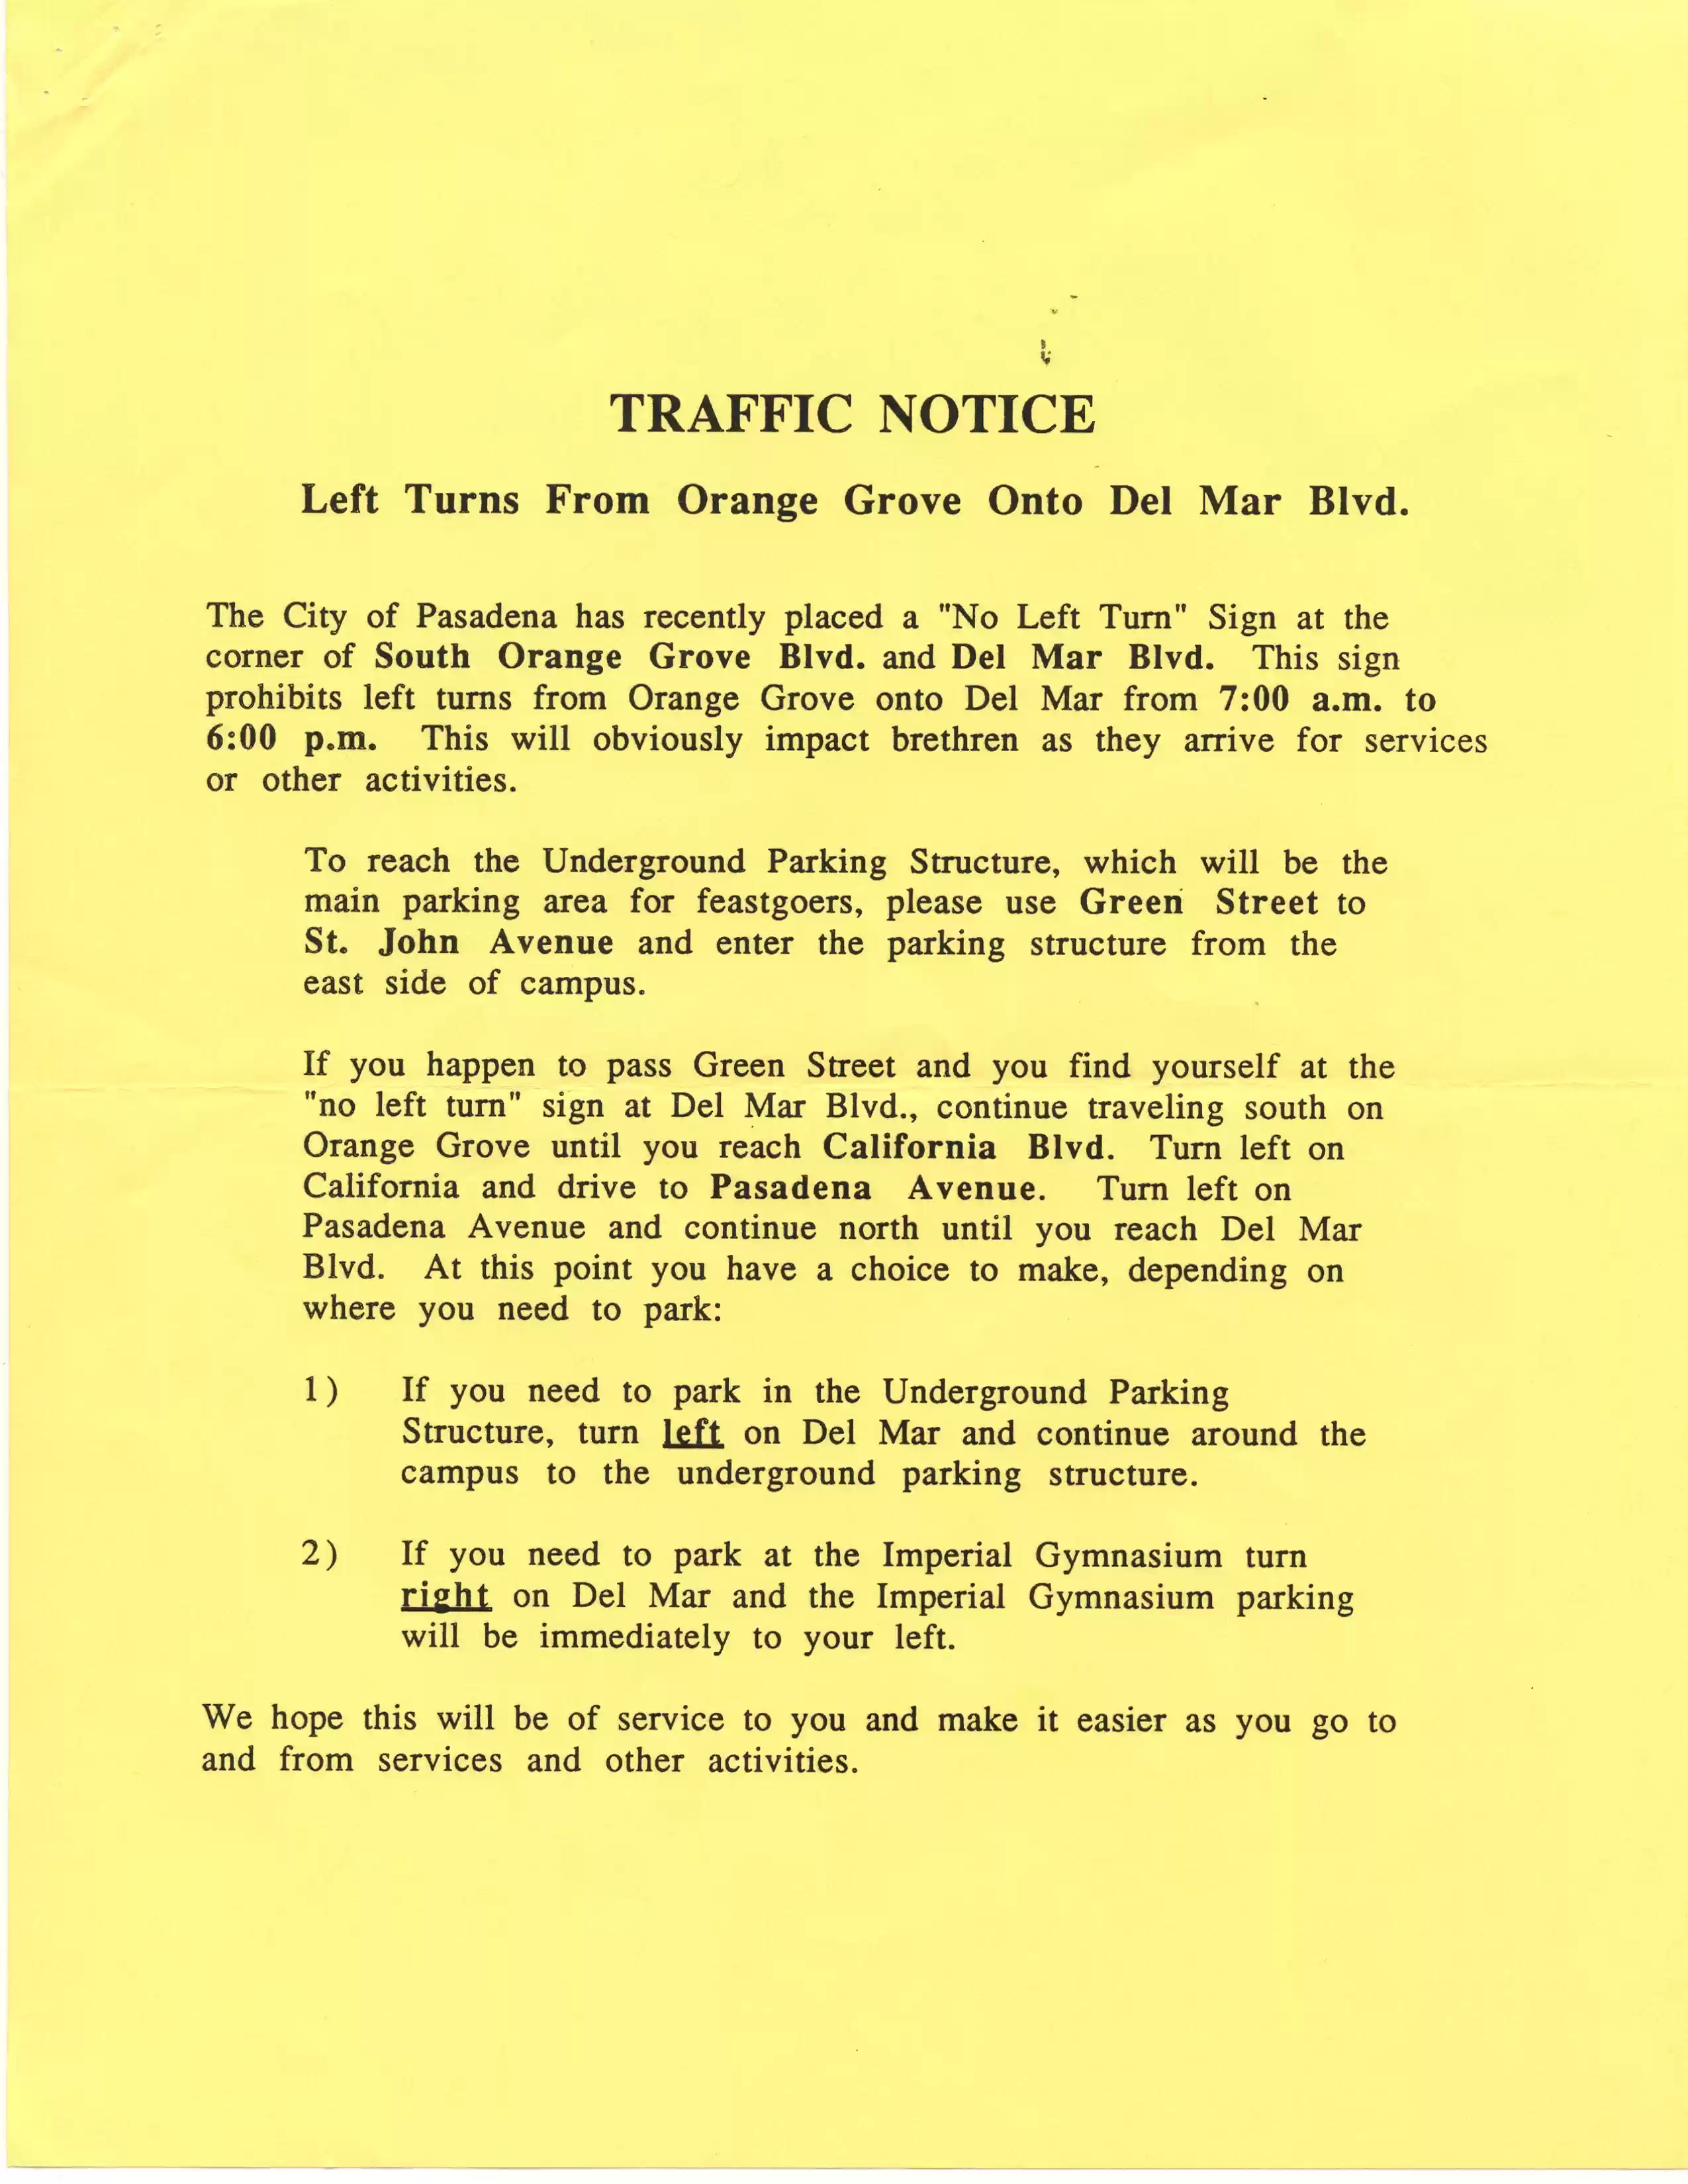 1. FT bulletin Pasadena traffic notice, 1988